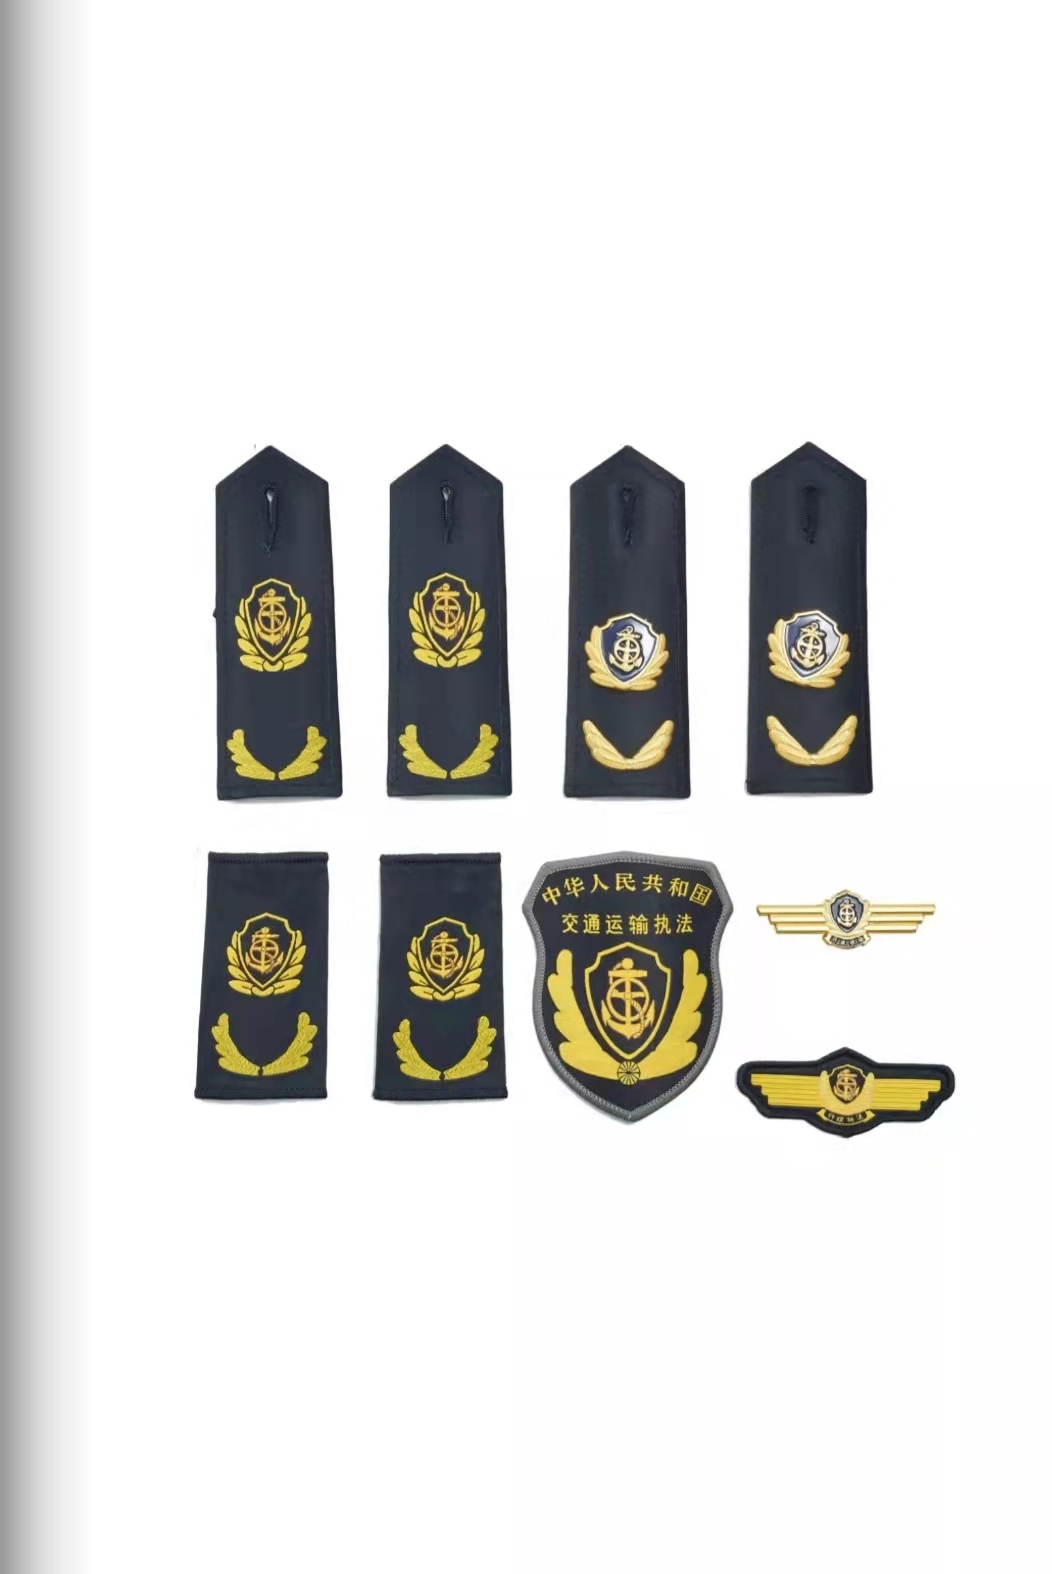 丹东六部门统一交通运输执法服装标志